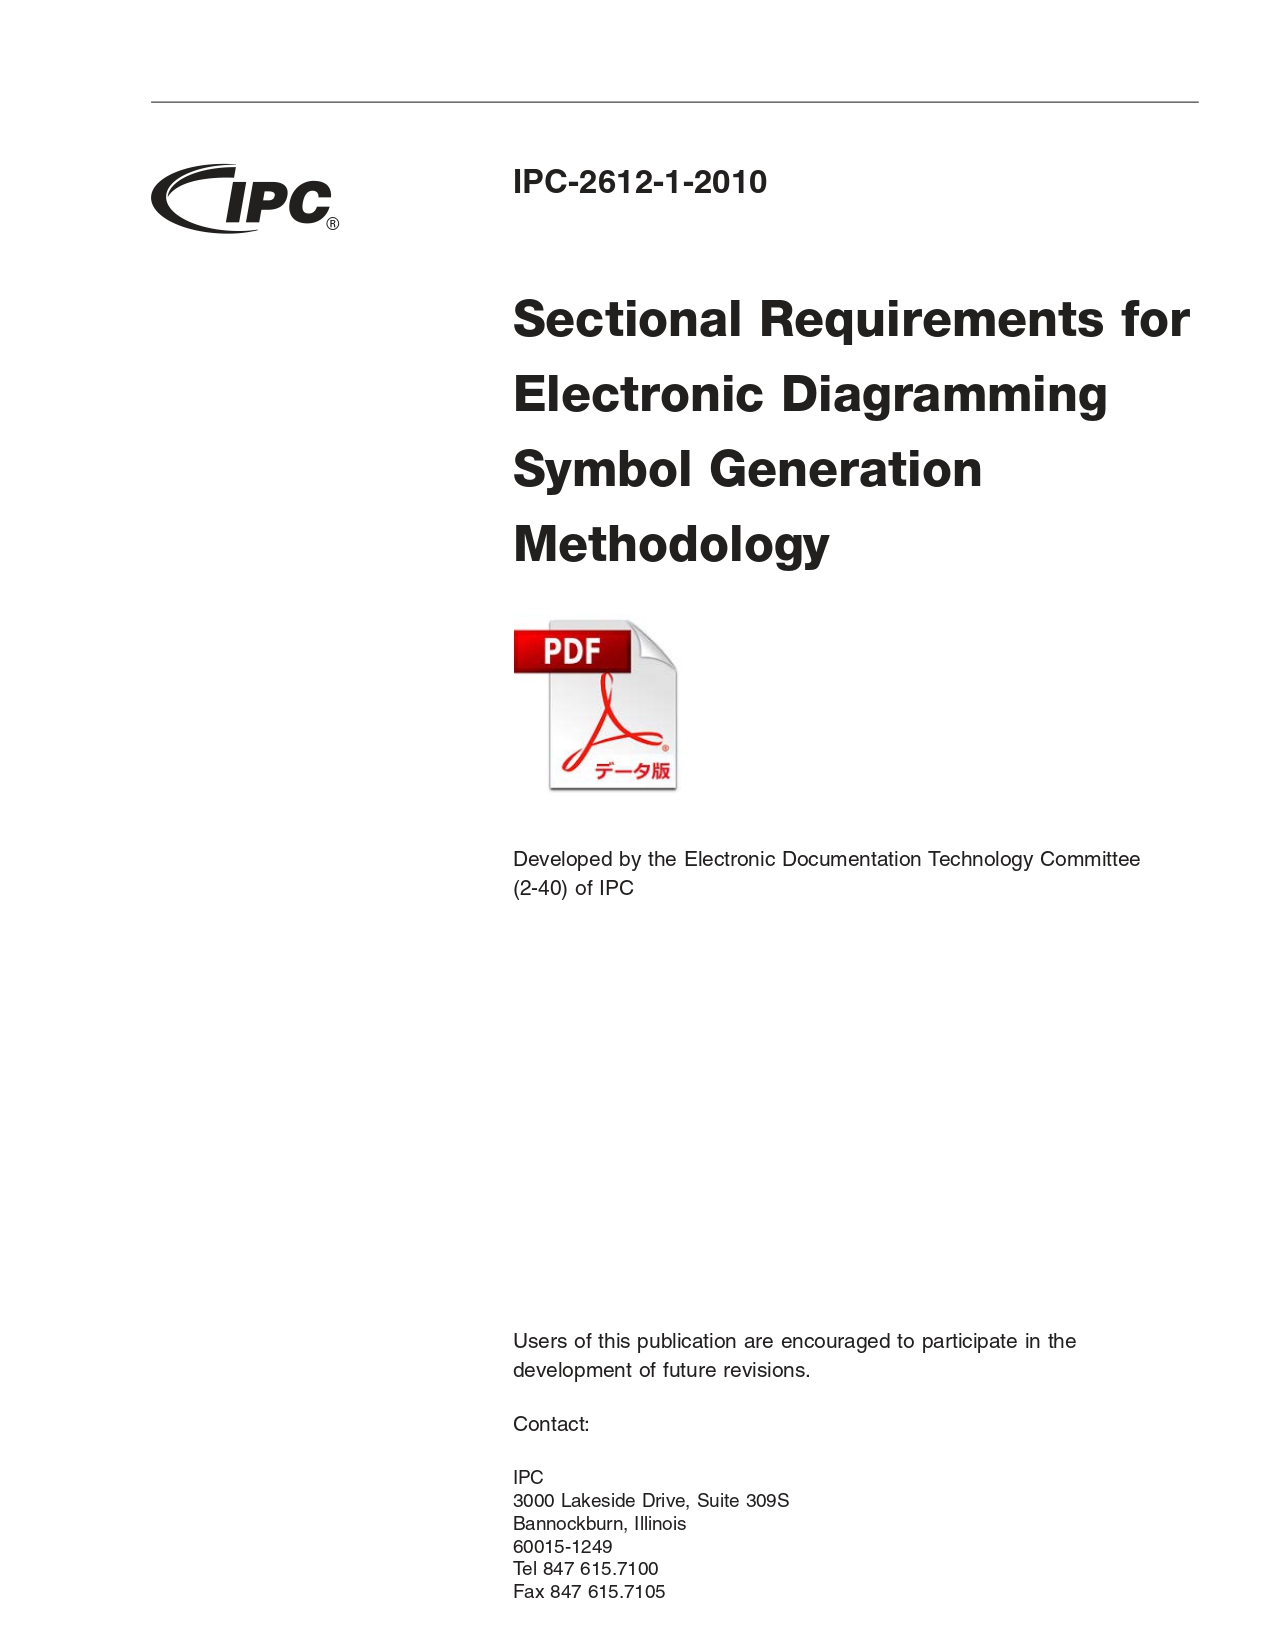 ［英語版］IPC-2612-1: Sectional Requirements for Electronic Diagramming Symbol Generation Methodology